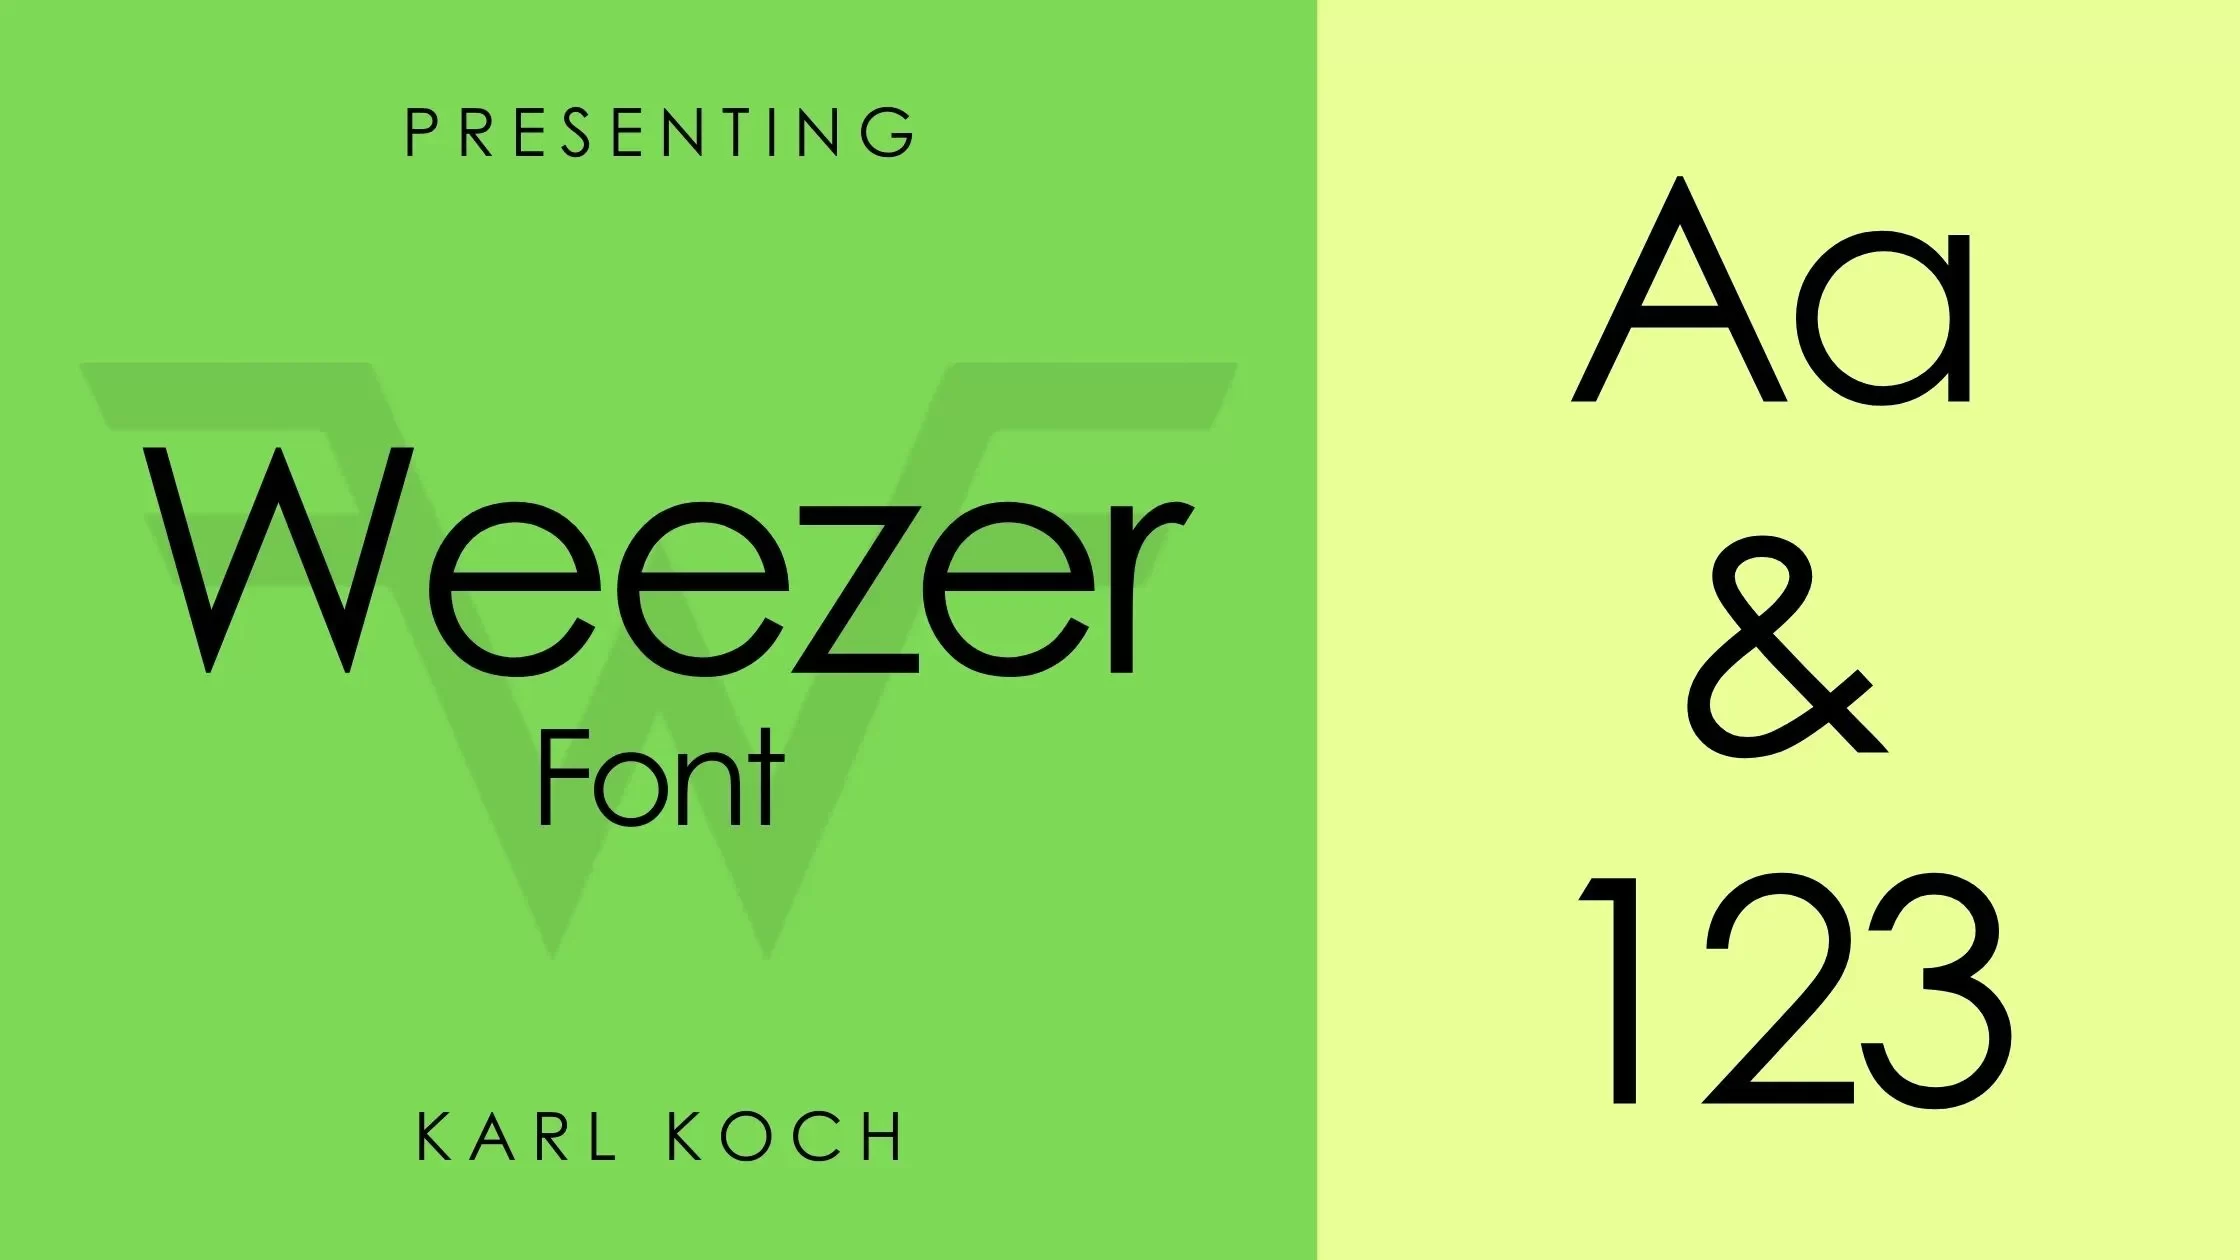 Weezer font